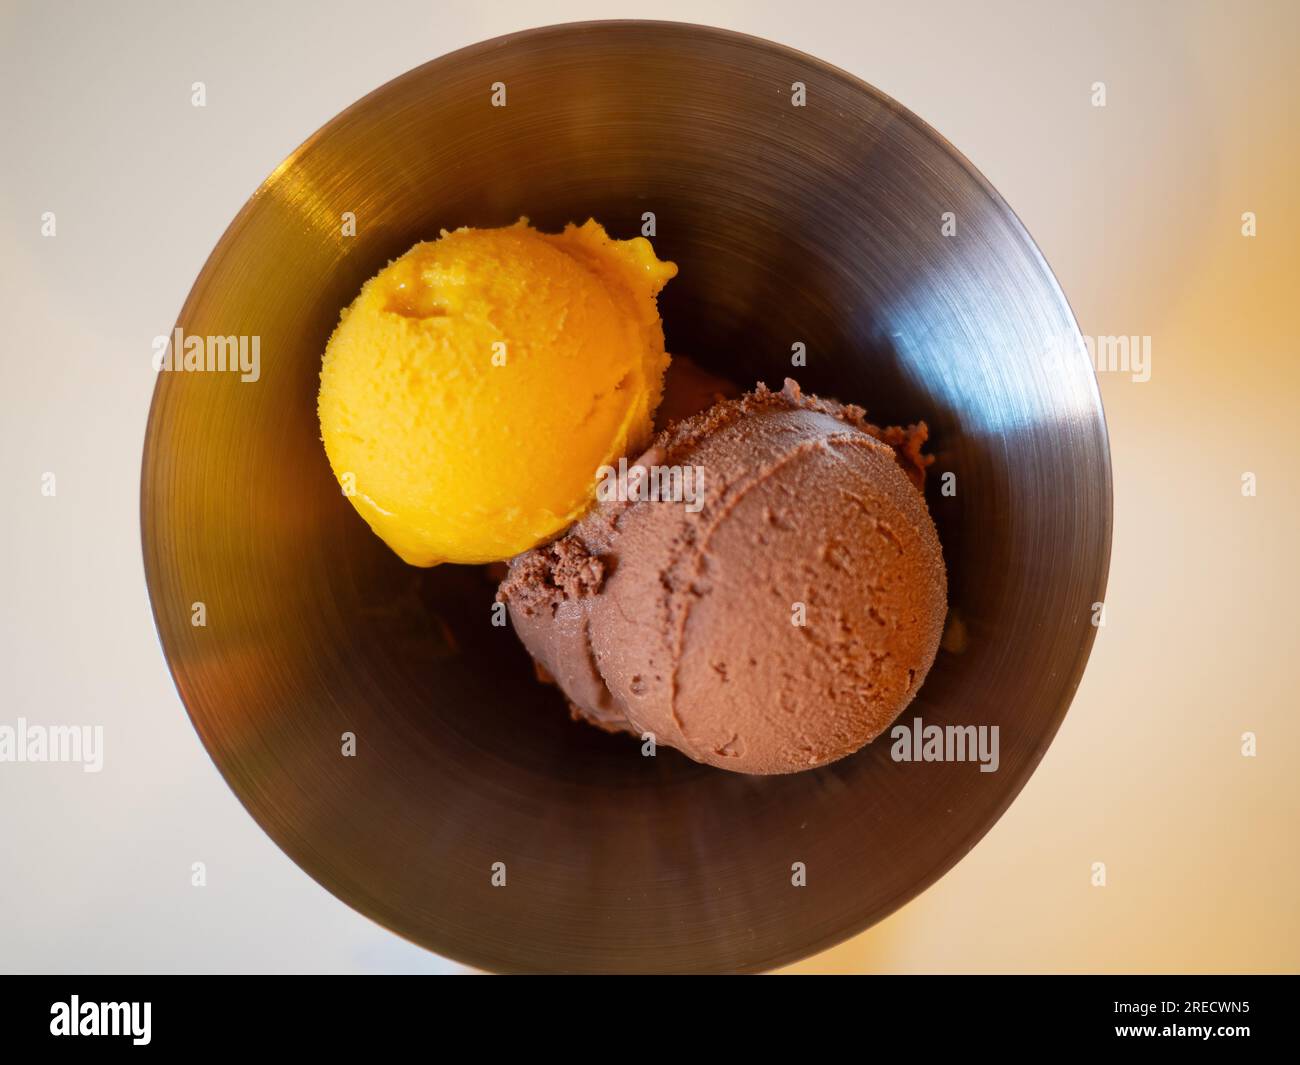 Deux boules de crème glacée dans un bol en métal - une boule de mangue et une boule de chocolat. Banque D'Images